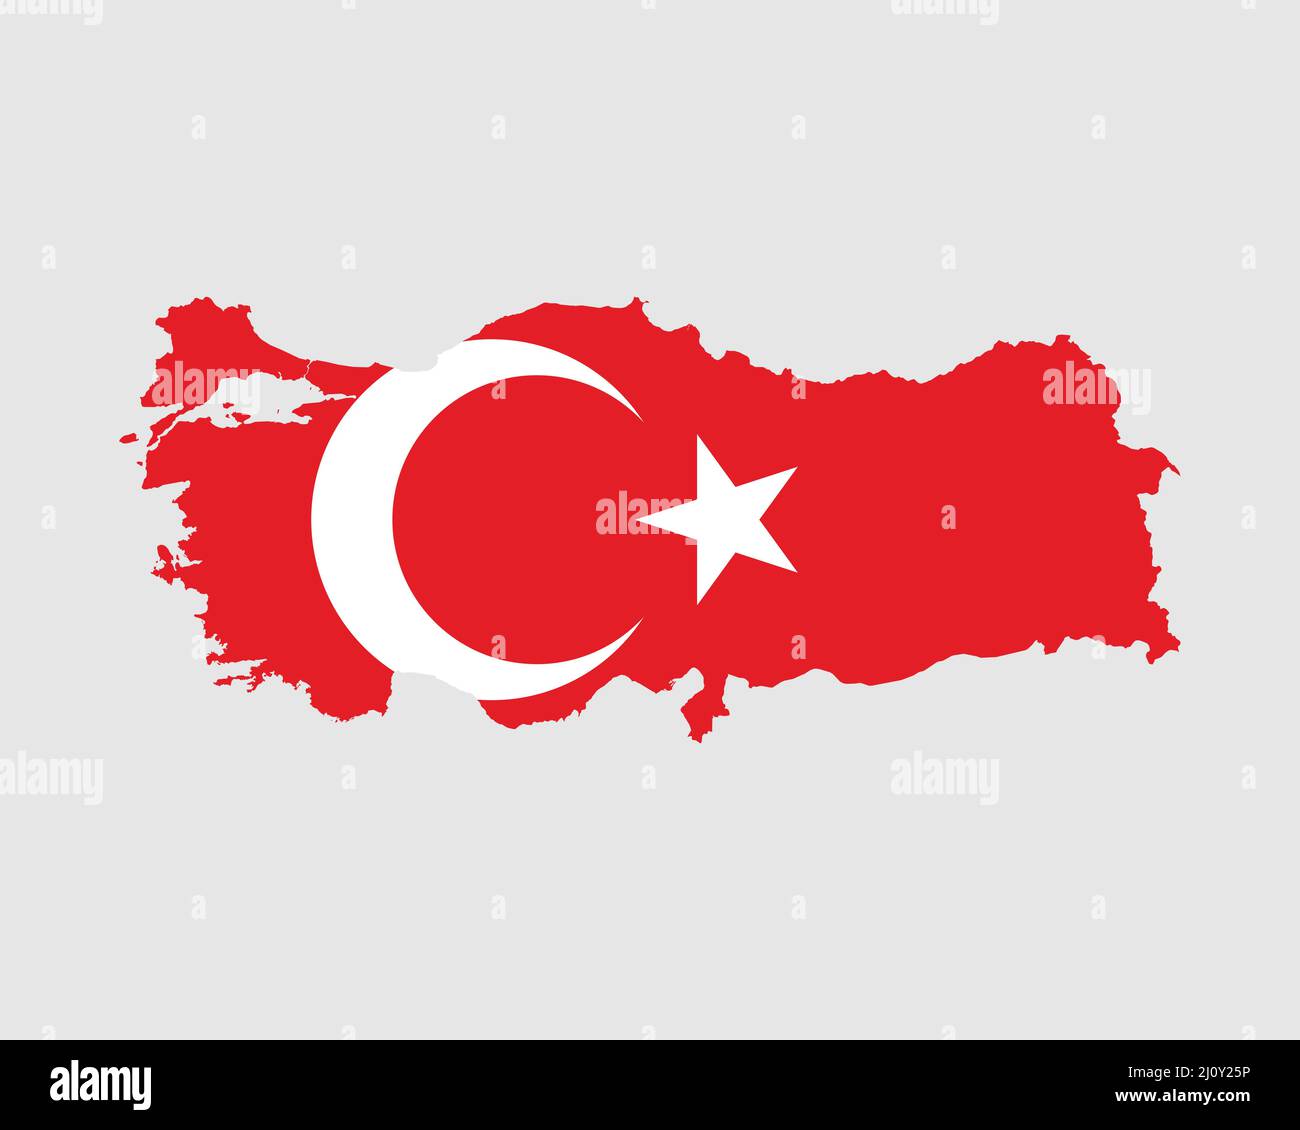 Türkei Flagge Karte. Karte der Republik Türkei mit dem türkischen Länderbanner. Vektorgrafik. Stock Vektor